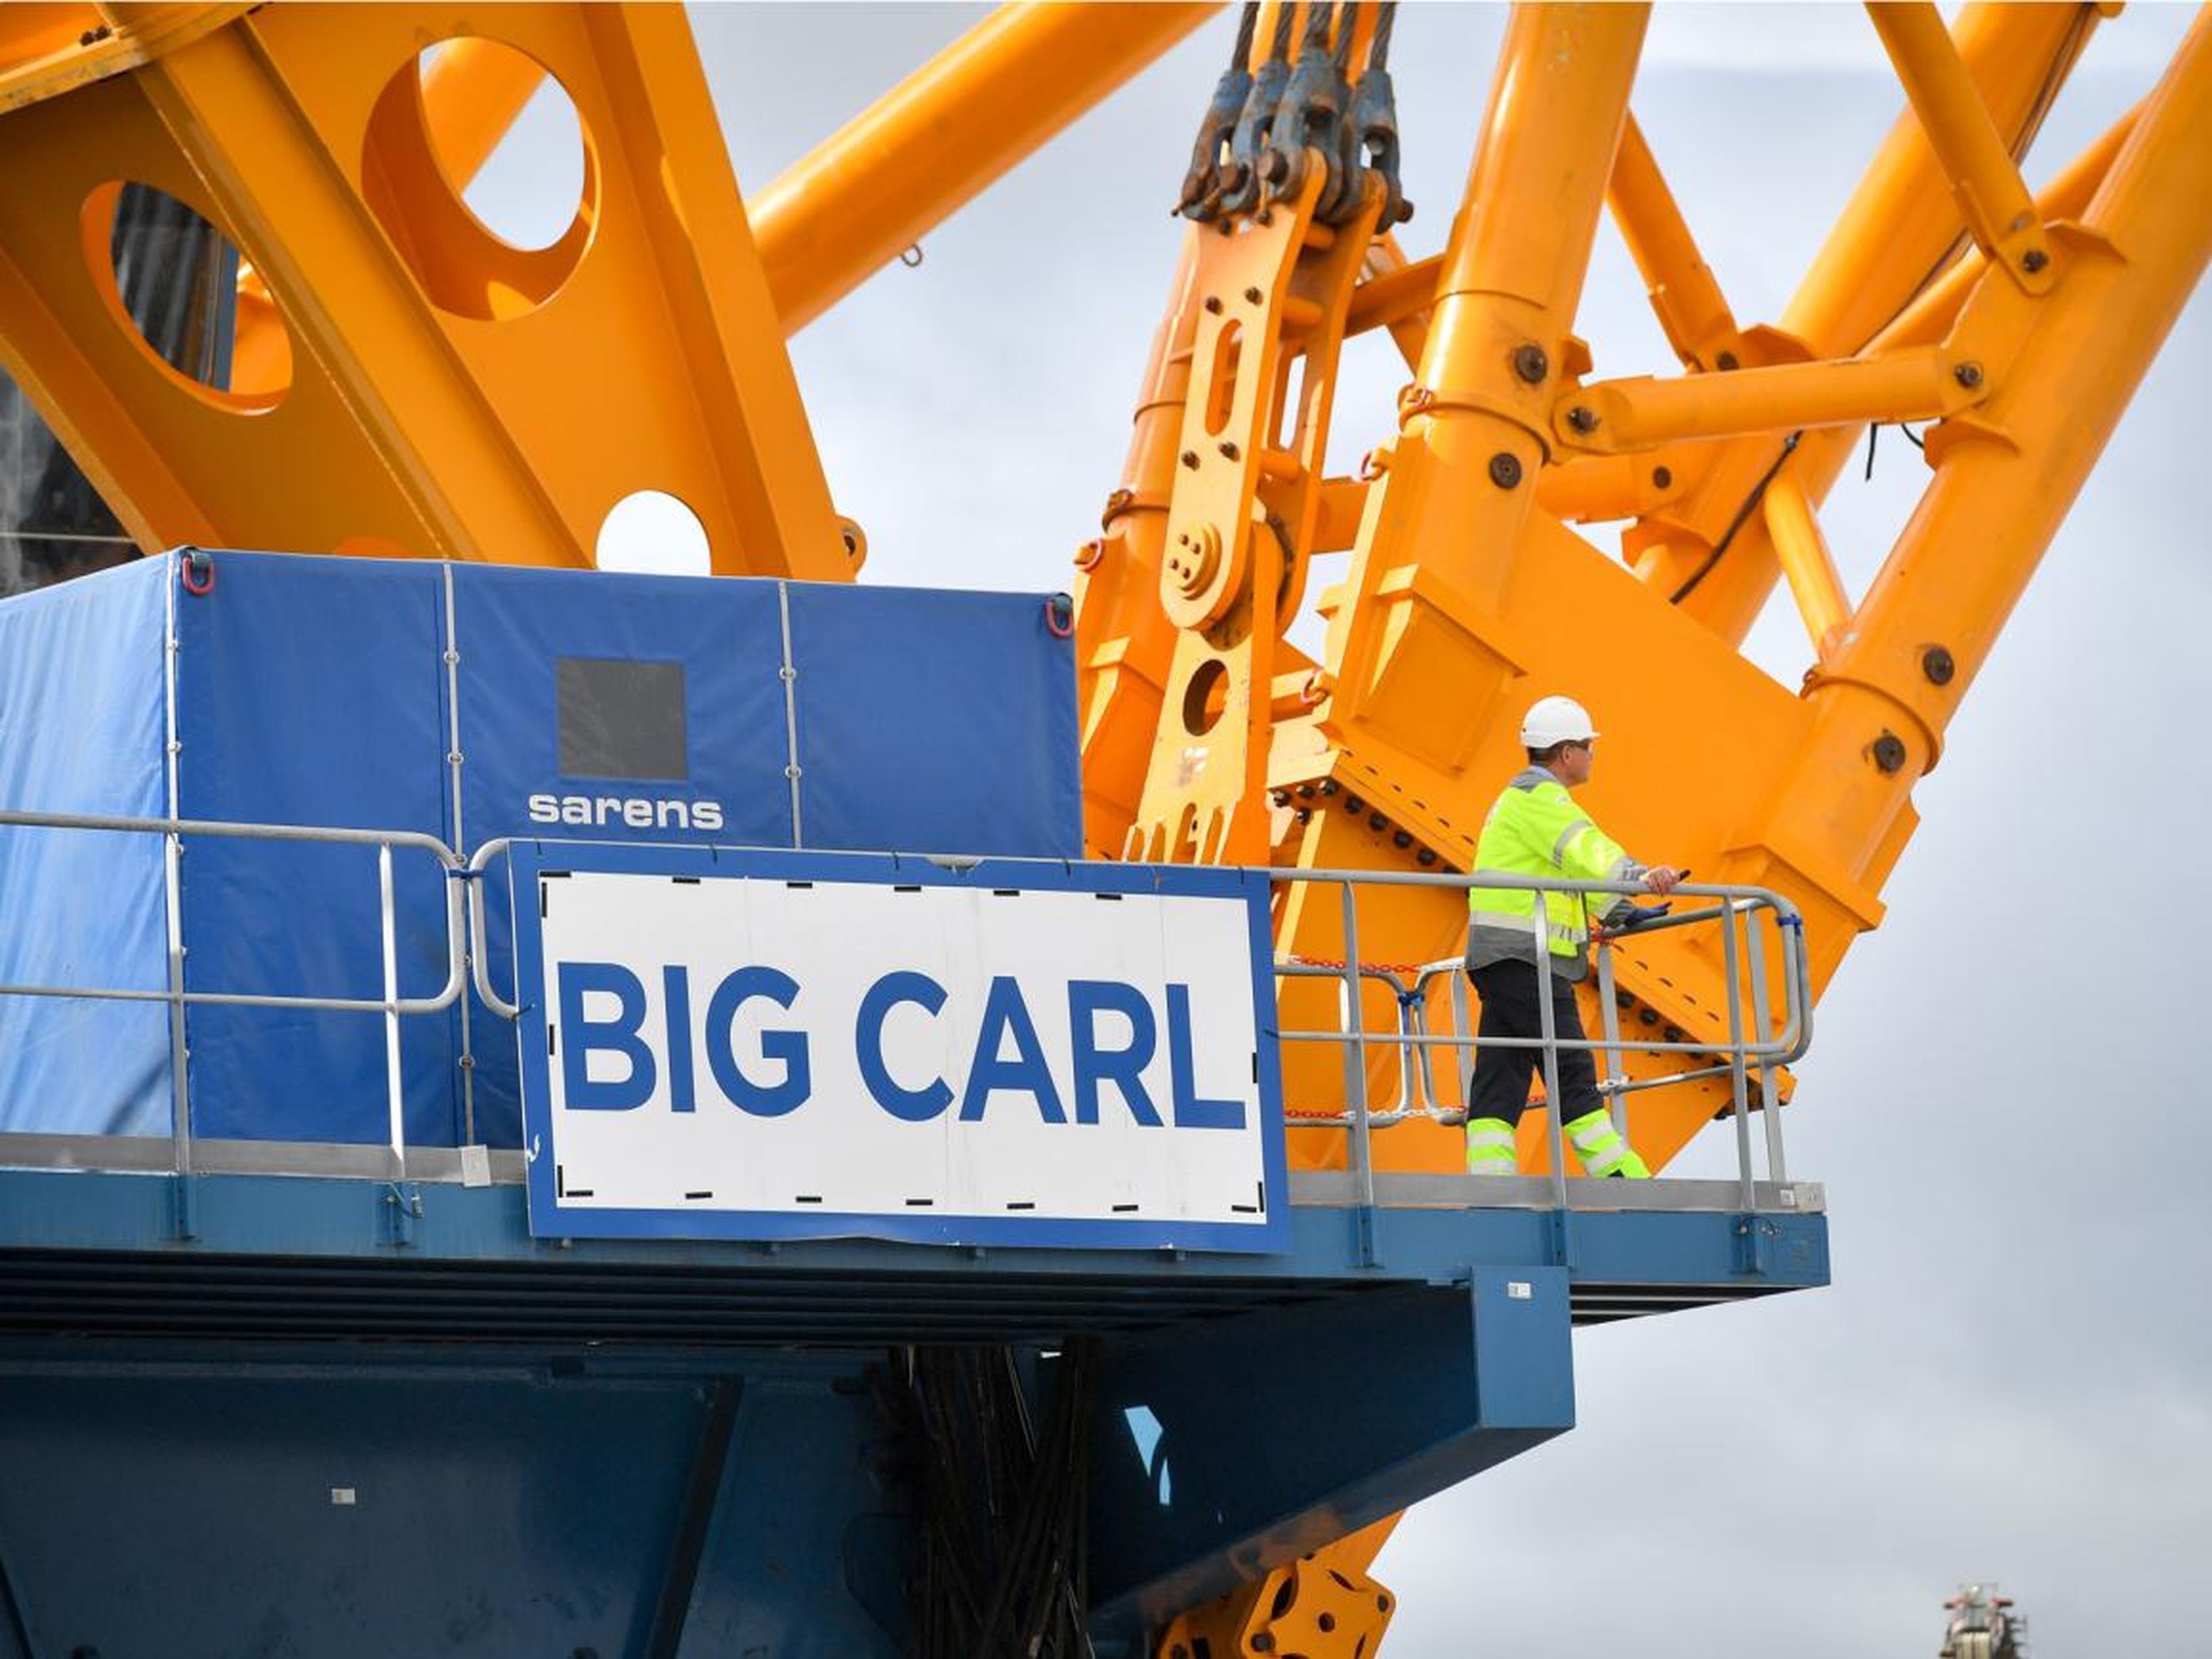 Así es 'Big Carl', la grúa más grande del mundo: puede levantar 3.000 toneladas y transportar 250 camiones.